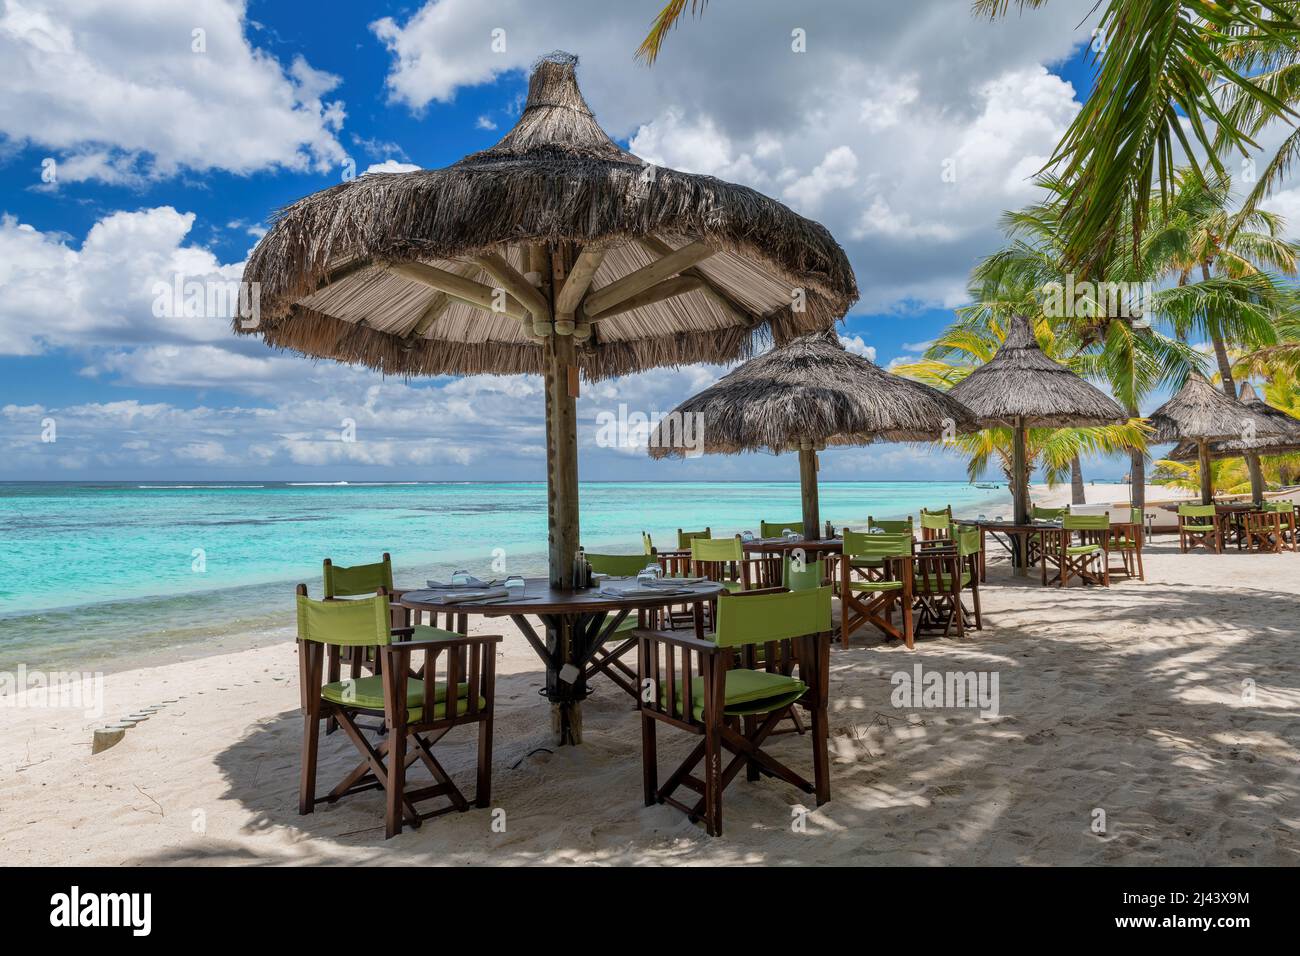 Beach  restaurant in beach under umbrellas, Stock Photo